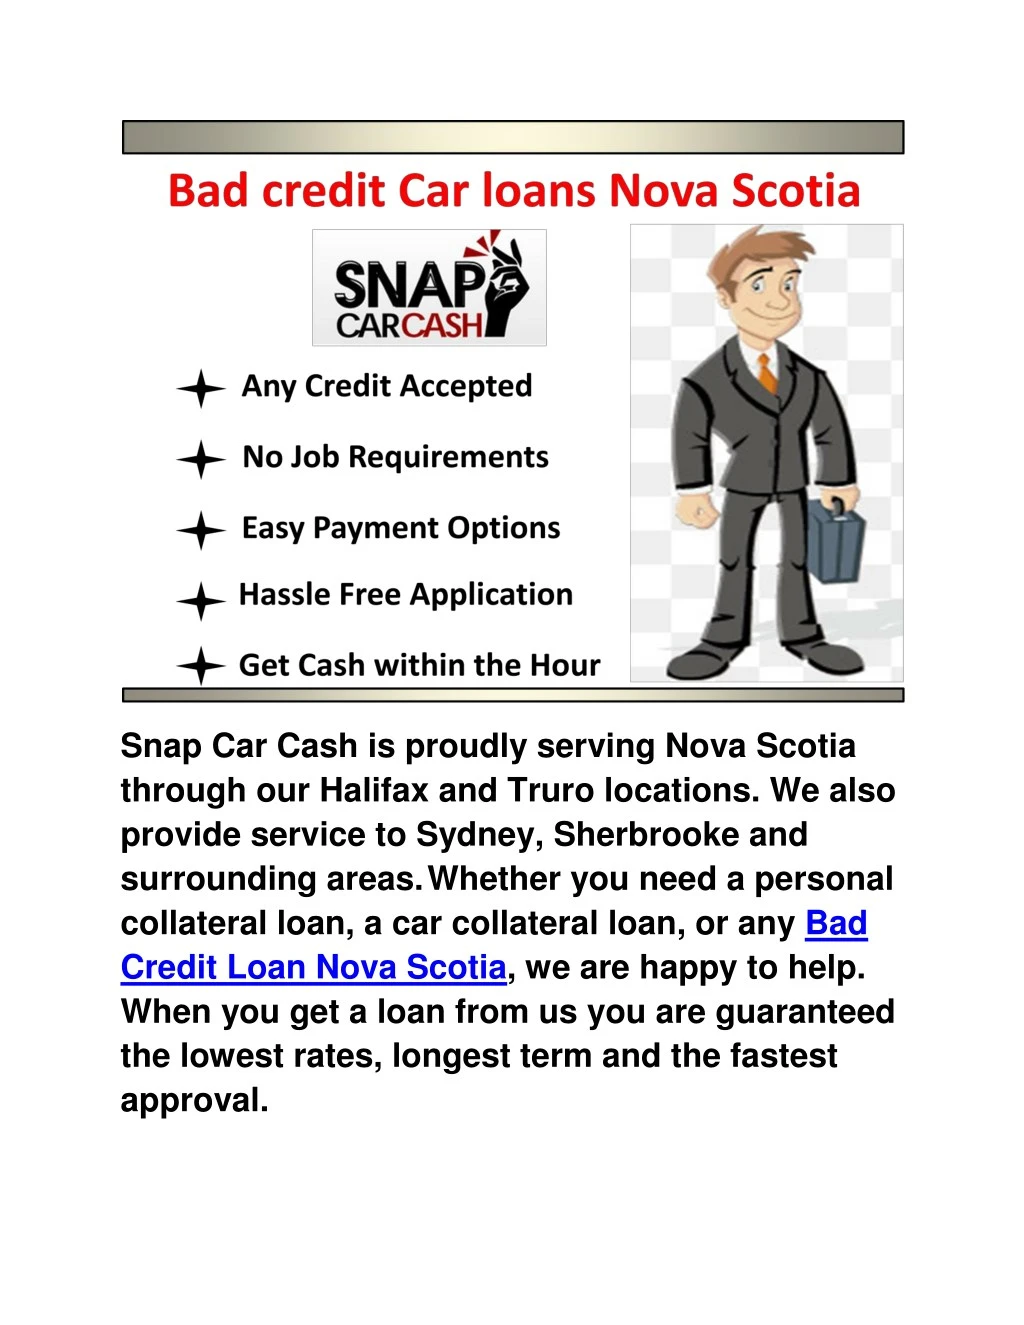 snap car cash is proudly serving nova scotia